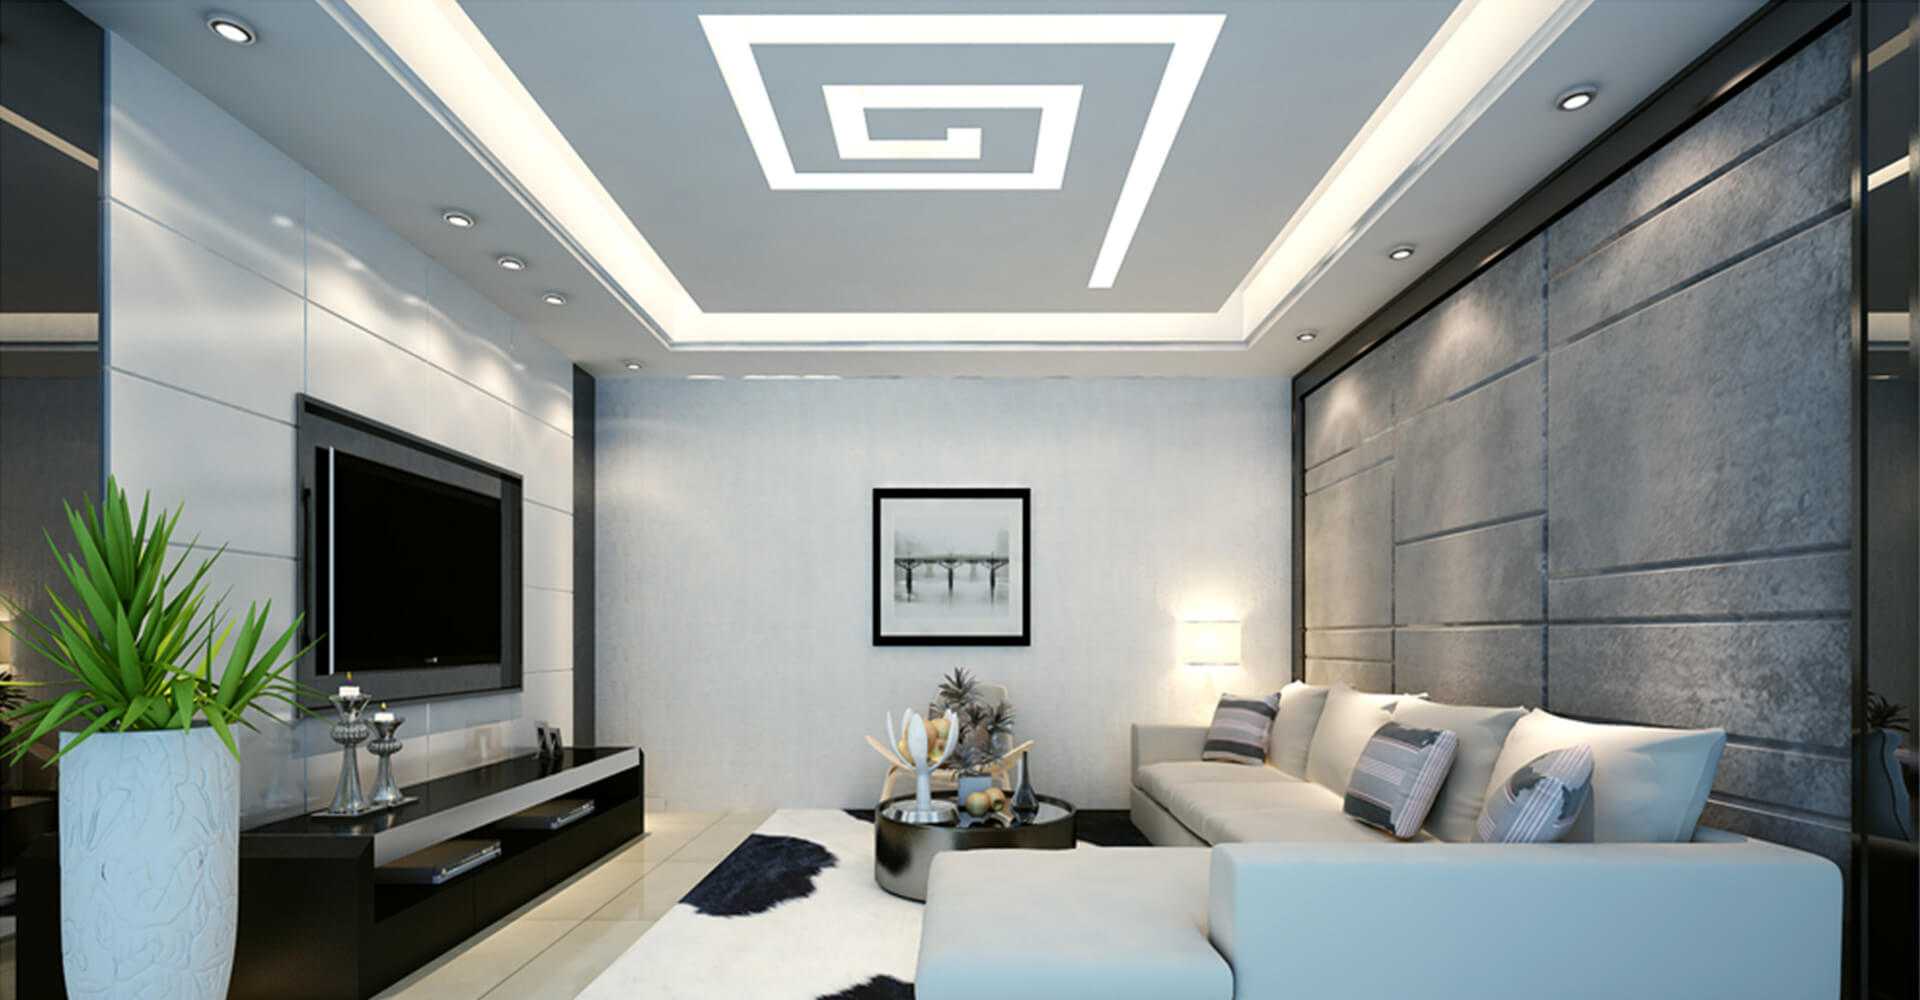 Đèn trang trí trần thạch cao được thiết kế với nhiều kiểu dáng độc đáo, sử dụng công nghệ LED tiên tiến giúp tiết kiệm điện năng. Tạo nét đặc trưng và sang trọng cho không gian nhà bạn.